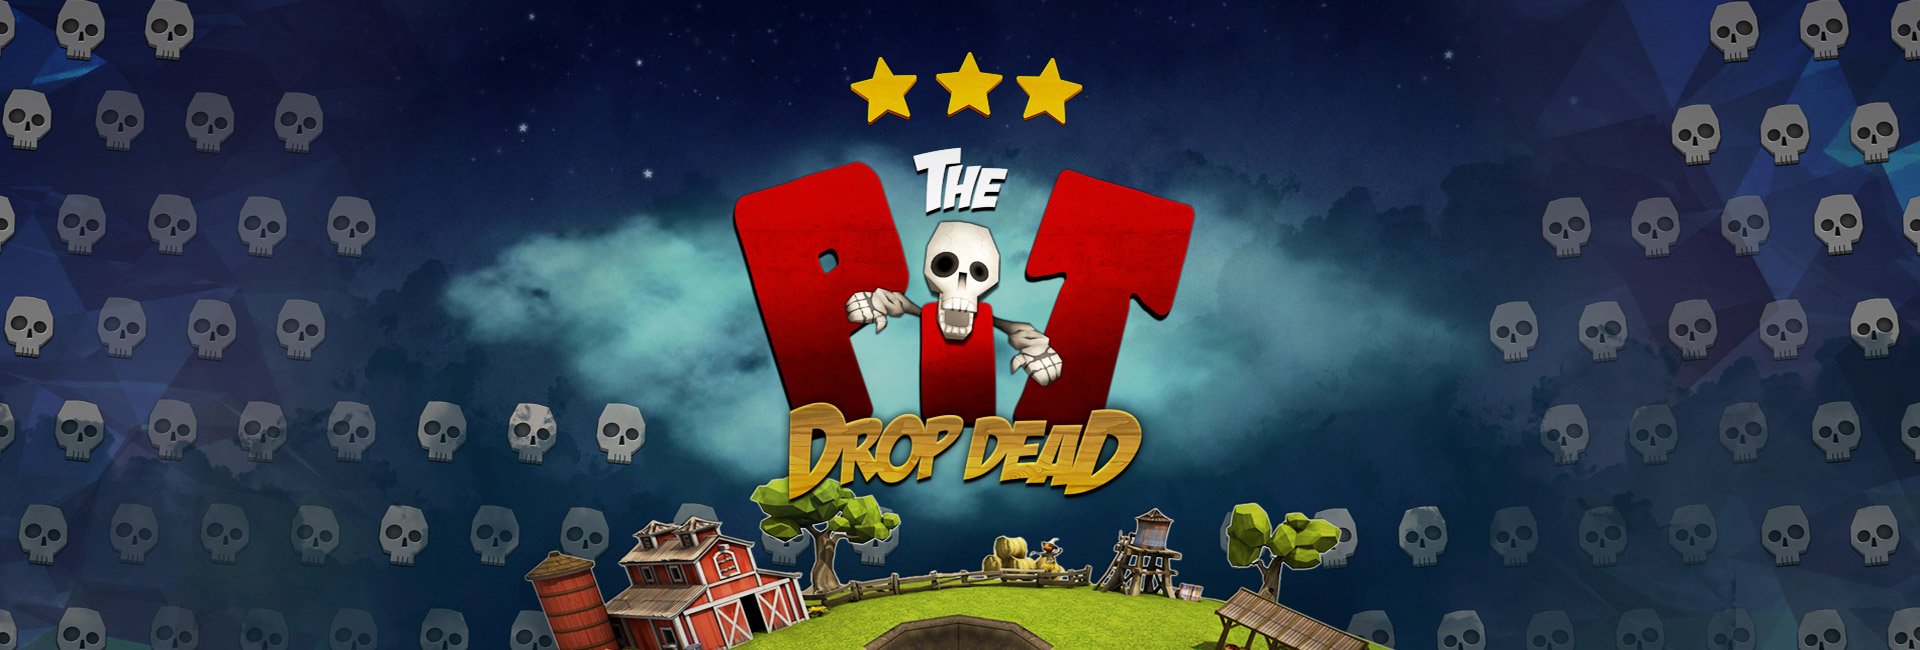 The Pit — Drop Dead